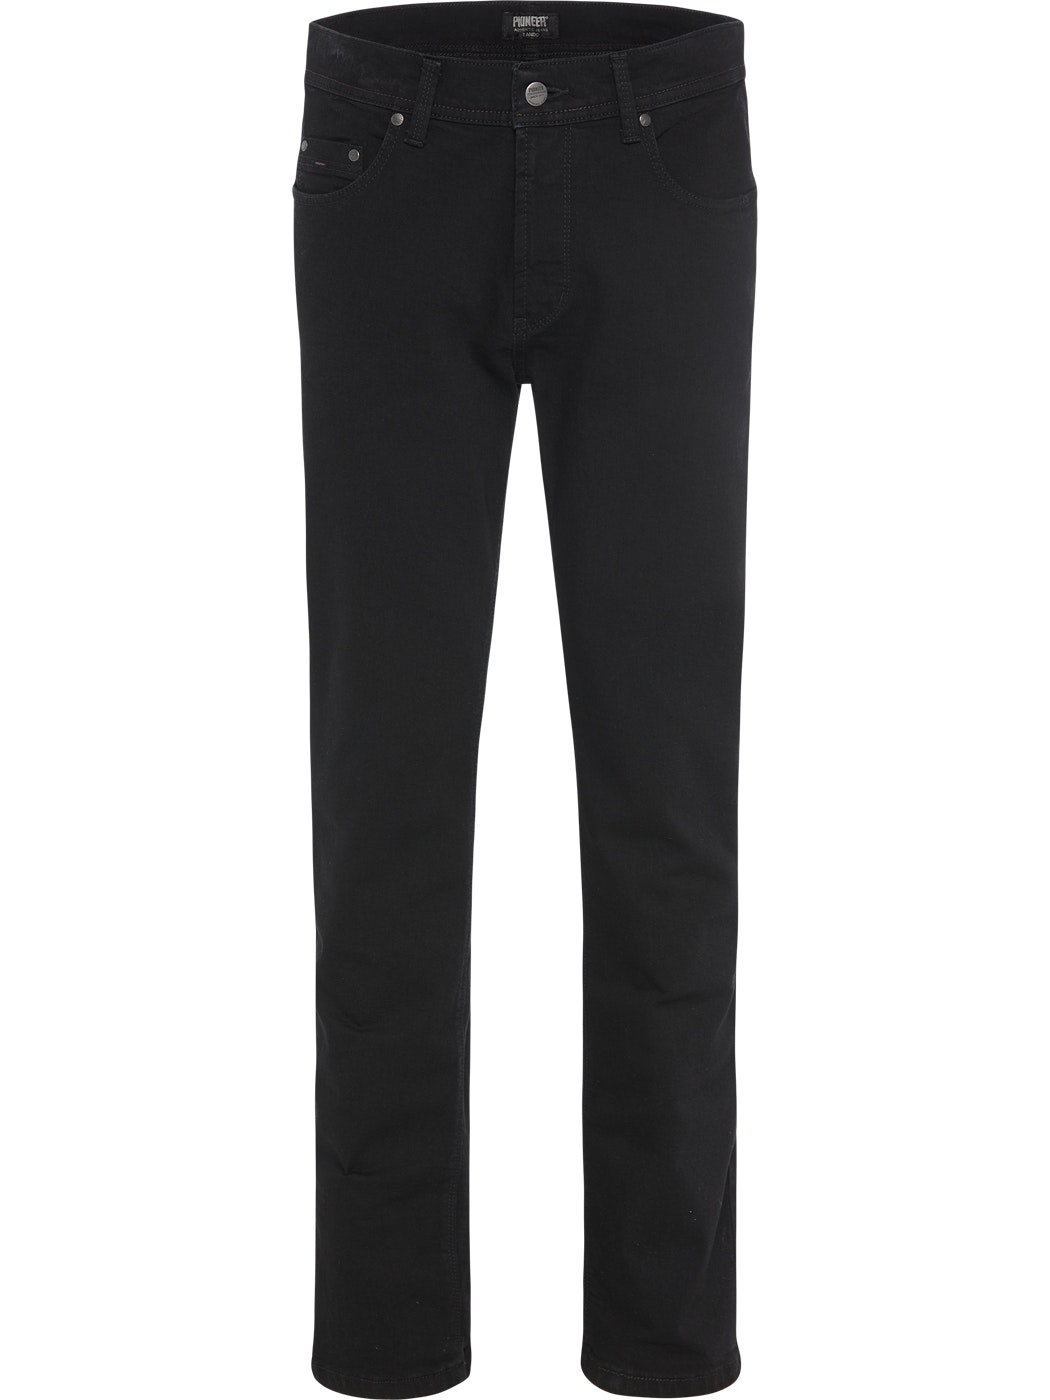 PIONEER RANDO black 1680 9403.05 | Pioneer Jeans | Männer Jeans | Jeans ...